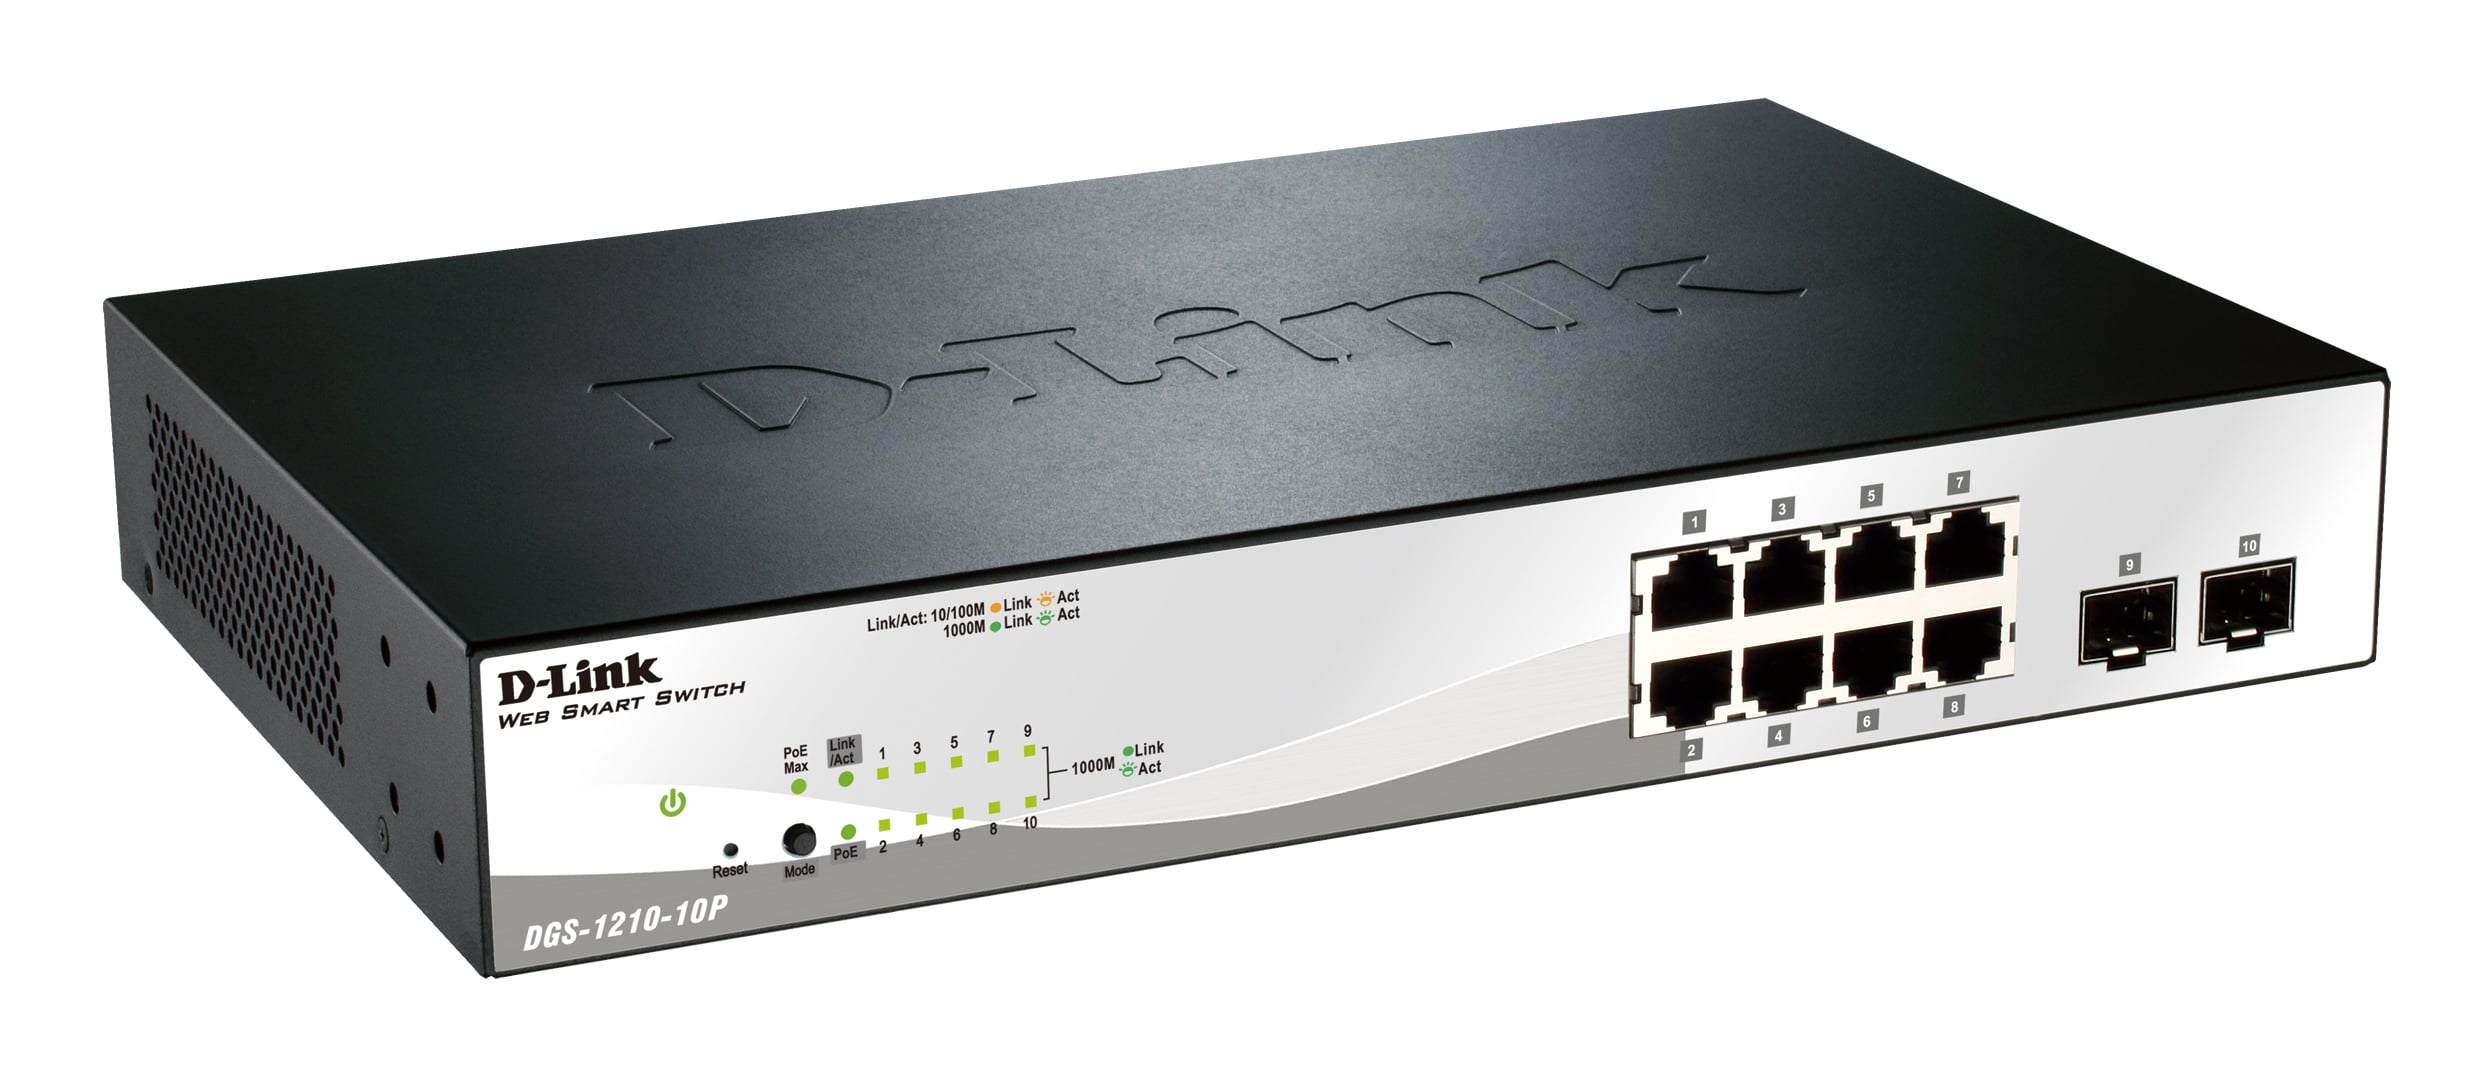 D-Link 10-Port PoE Gigabit WebSmart Switch, including 2 Gigabit Combo BASE-T/SFP